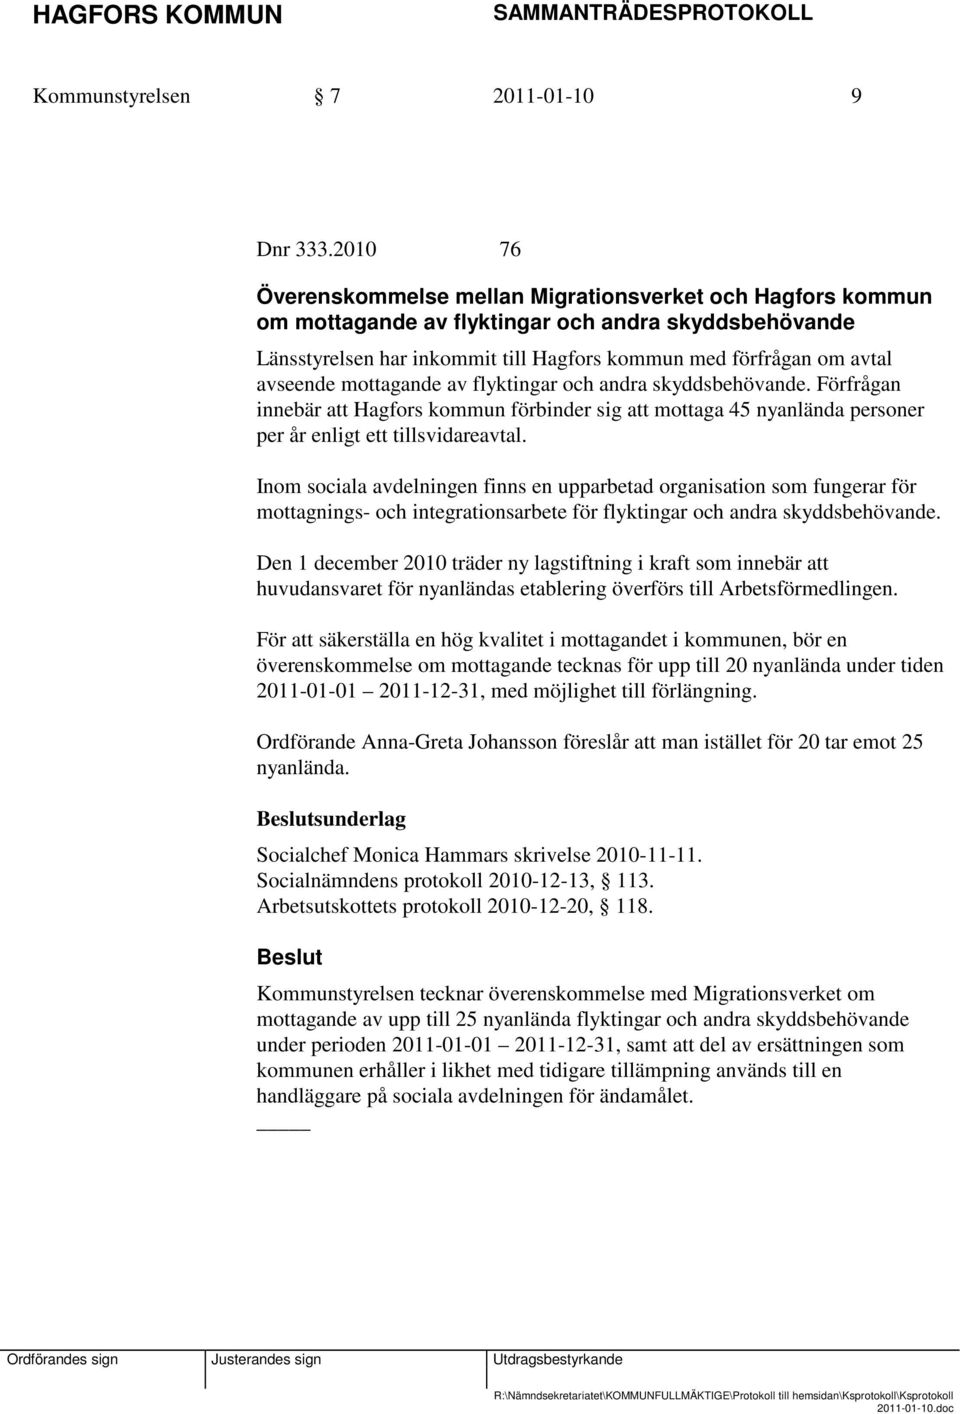 mottagande av flyktingar och andra skyddsbehövande. Förfrågan innebär att Hagfors kommun förbinder sig att mottaga 45 nyanlända personer per år enligt ett tillsvidareavtal.